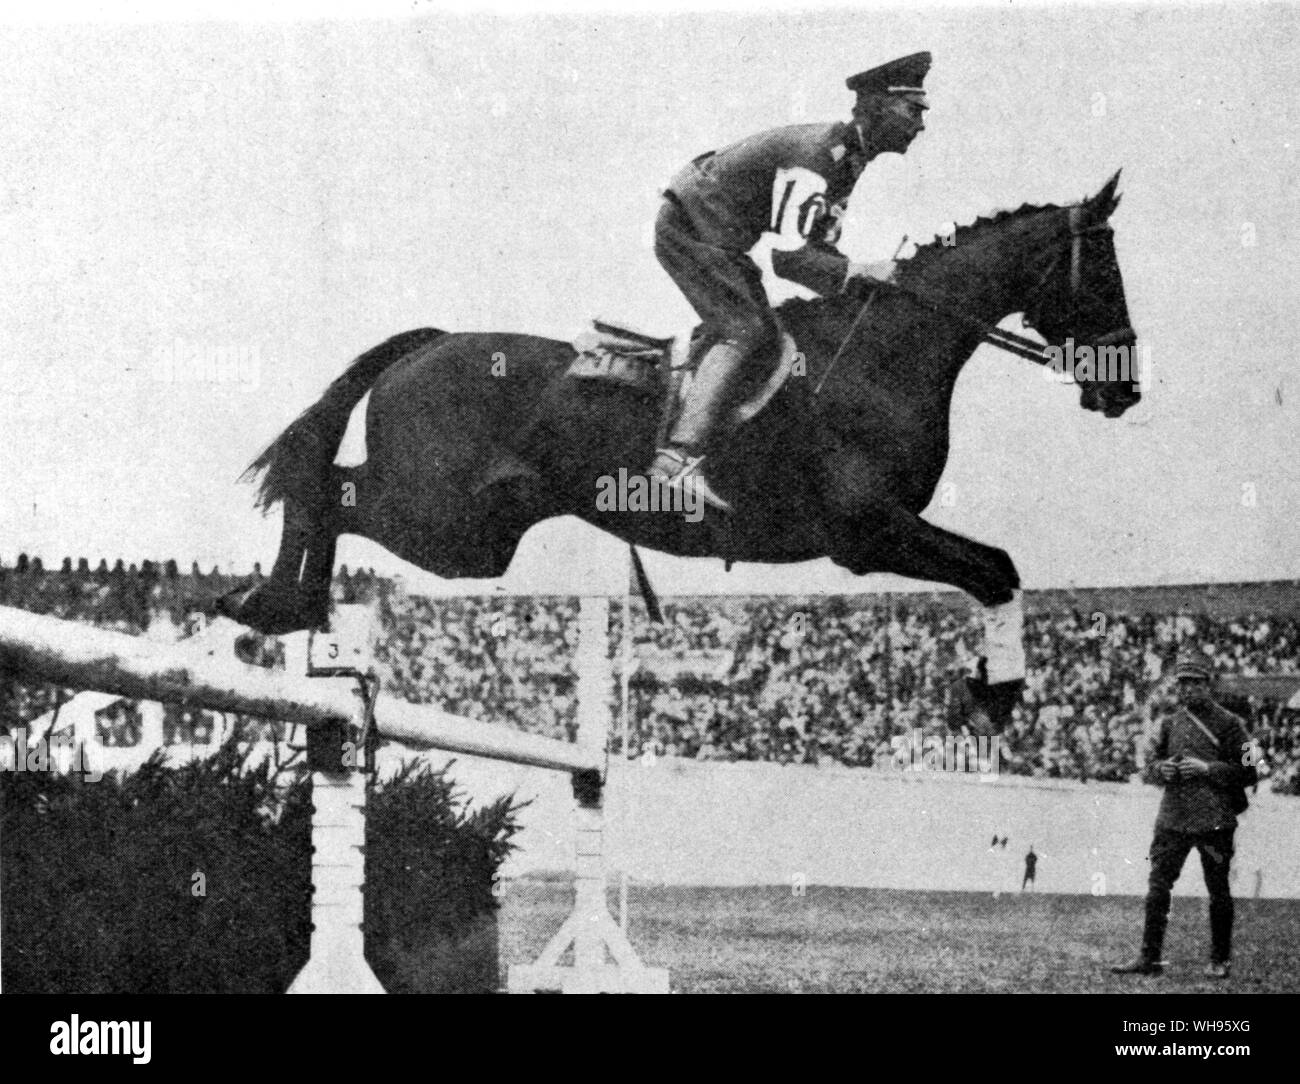 Concorso per il campionato equestre show jumping concorso B Neumann (Germania) su Ilja terzo premio Giochi Olimpici Amsterdam 1928 Foto Stock